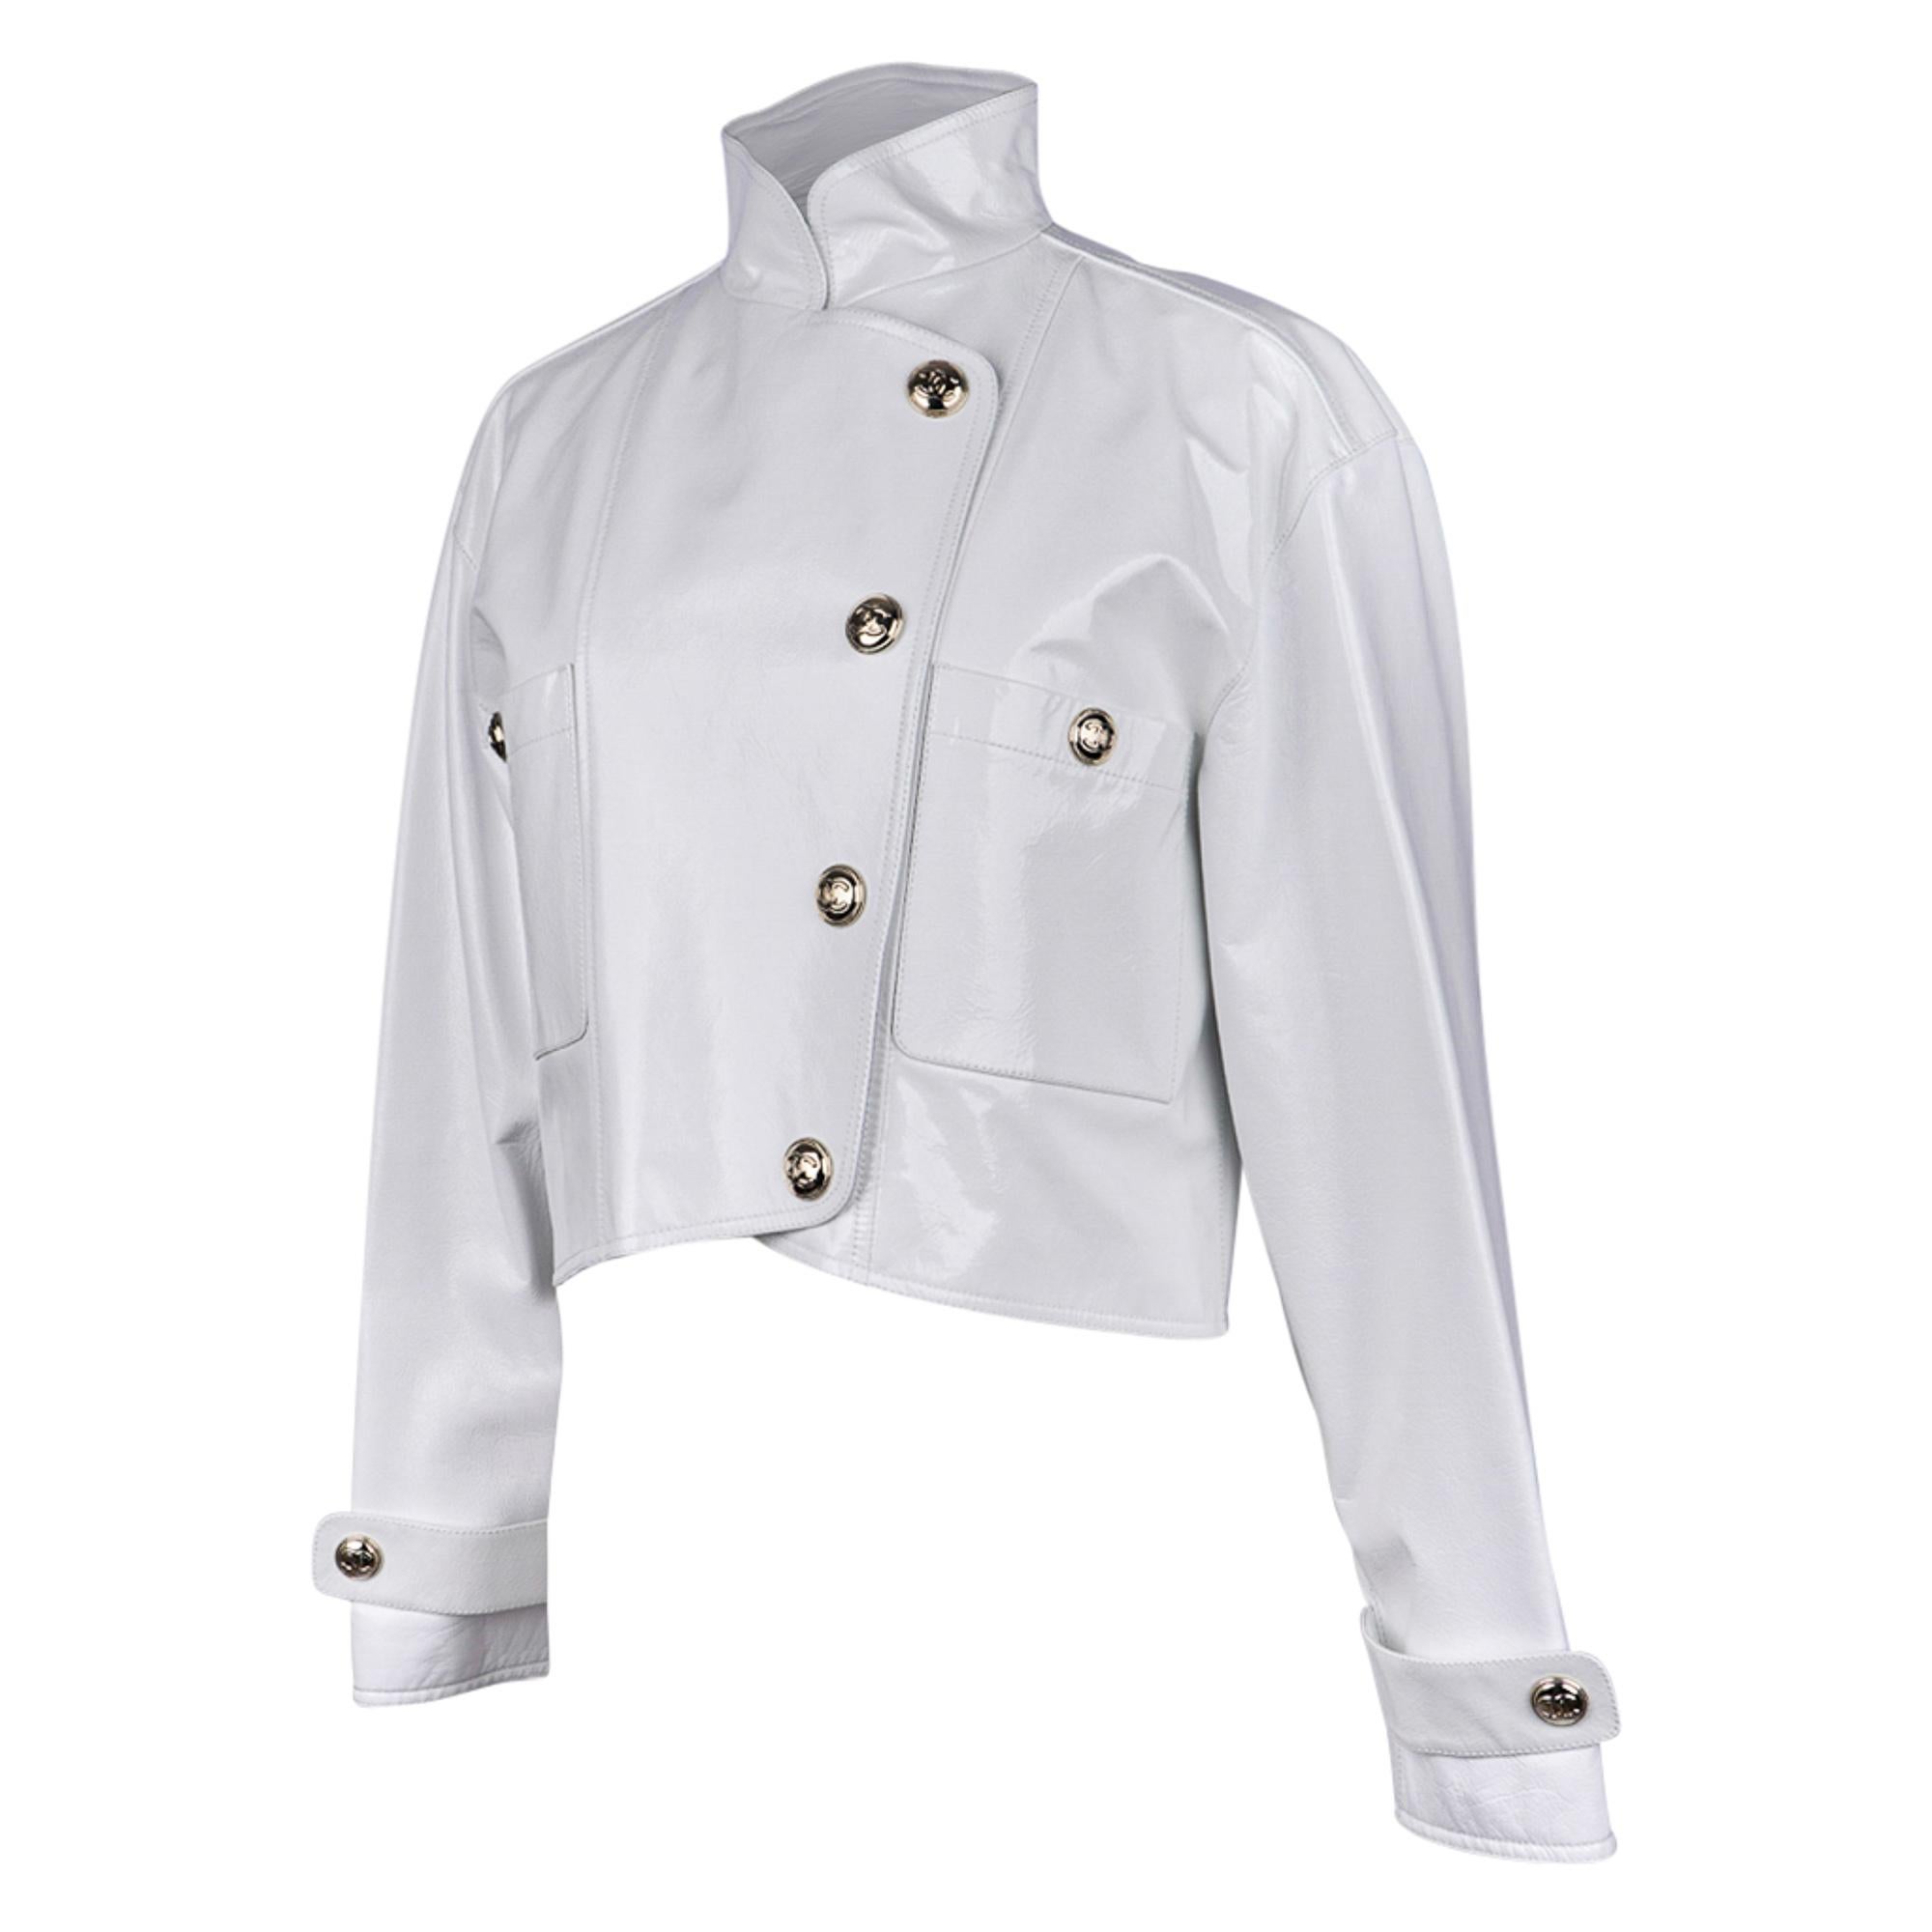 Veste courte Chanel 2020-21FW en cuir verni blanc style motard, taille 36/4, neuve avec étiquettes 1